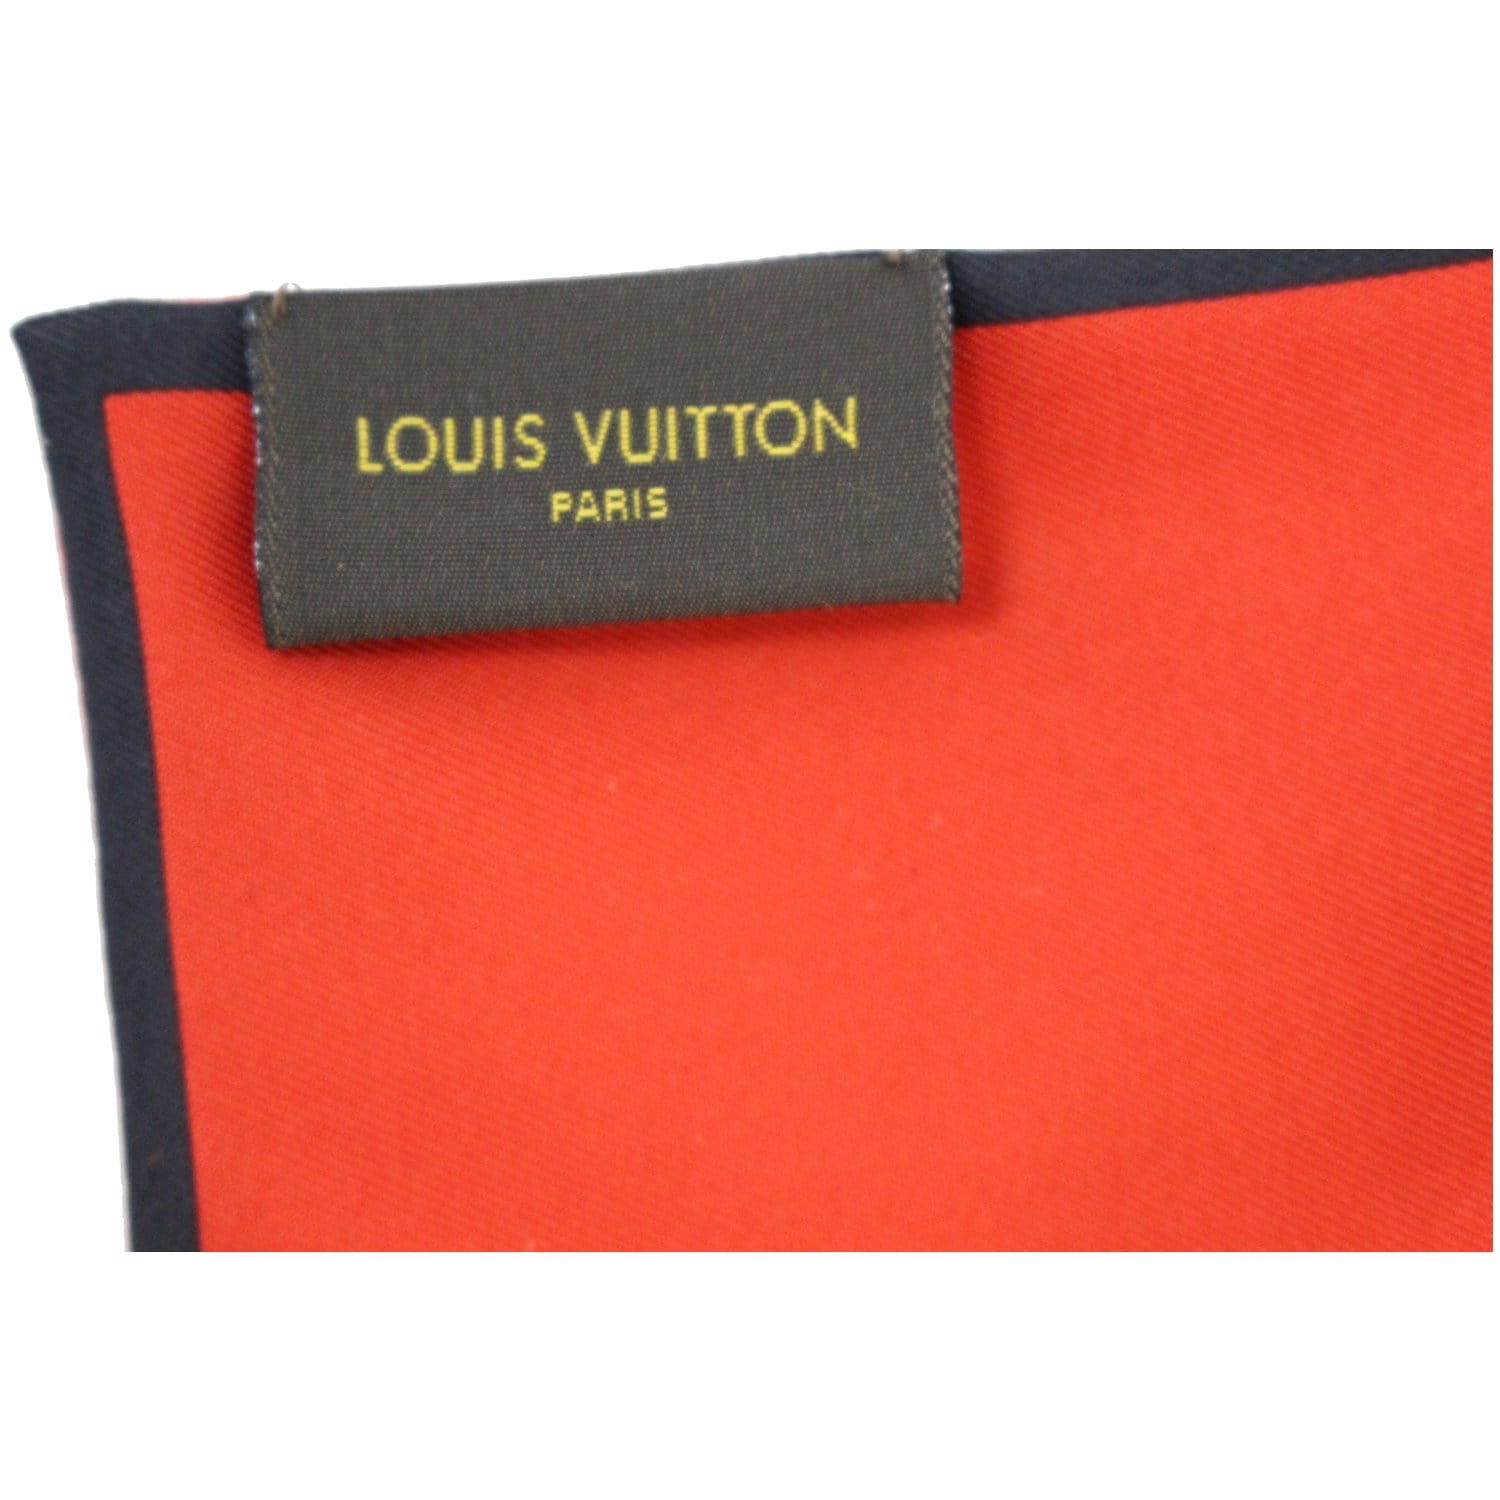 Vintage Louis Vuitton Trunks Bandeau - Shop Accessories - Shop